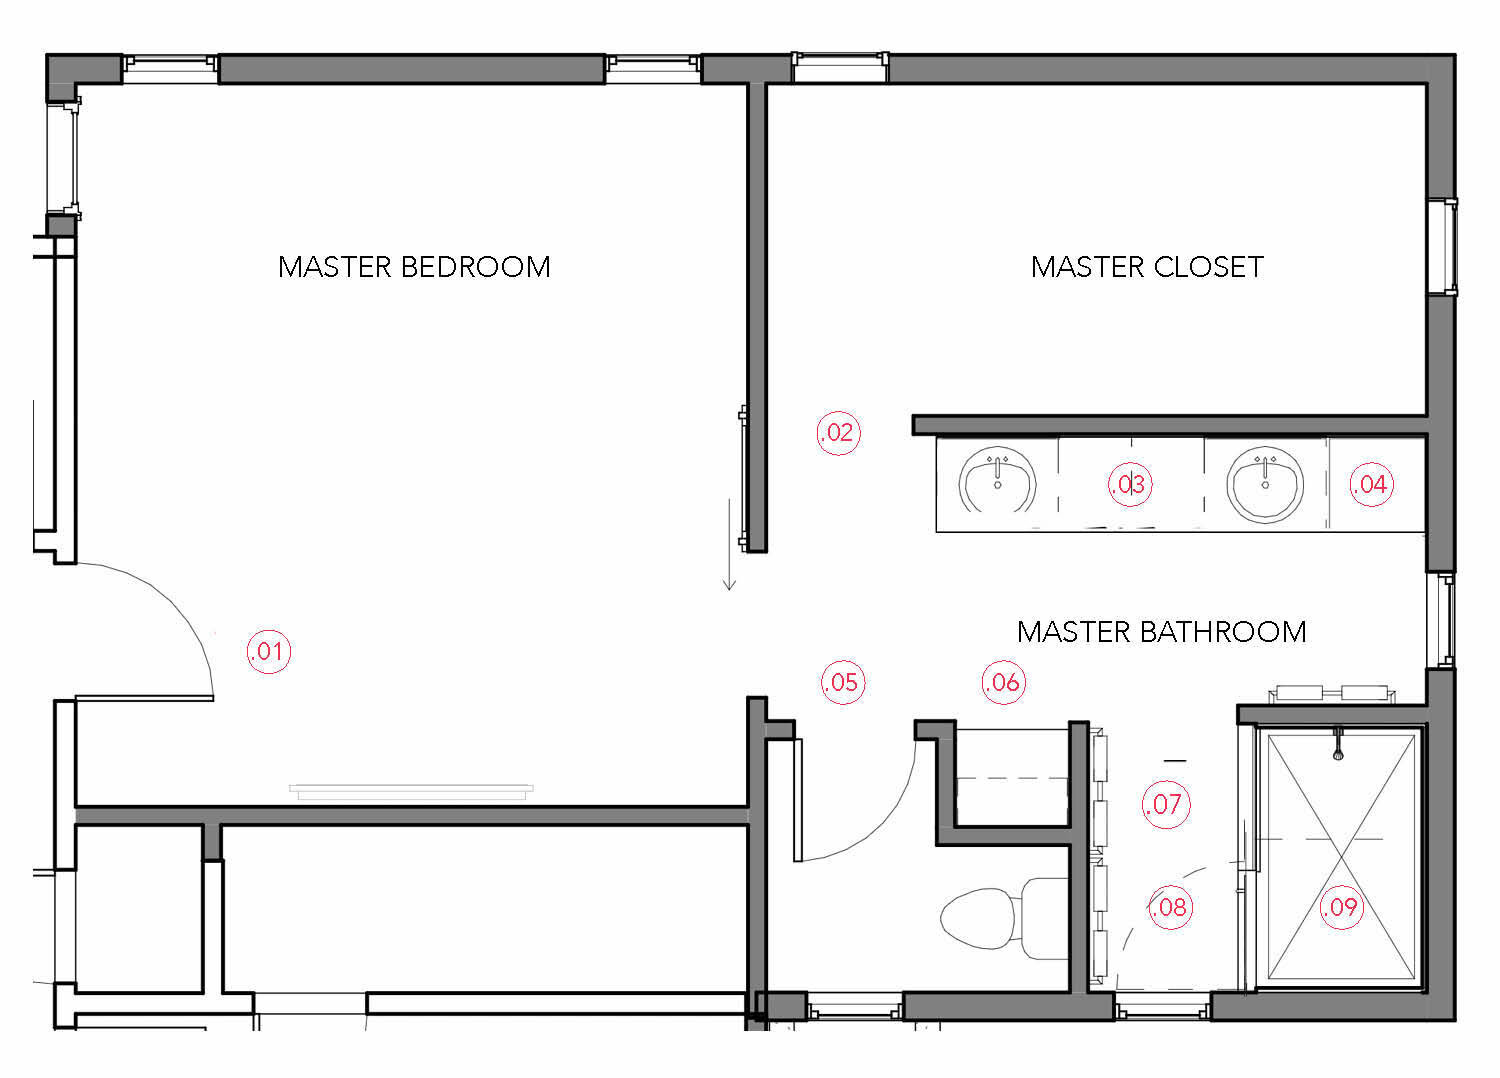 MASTER BEDROOM, BATHROOM + CLOSET FLOOR PLAN WITH REDLINE NOTES